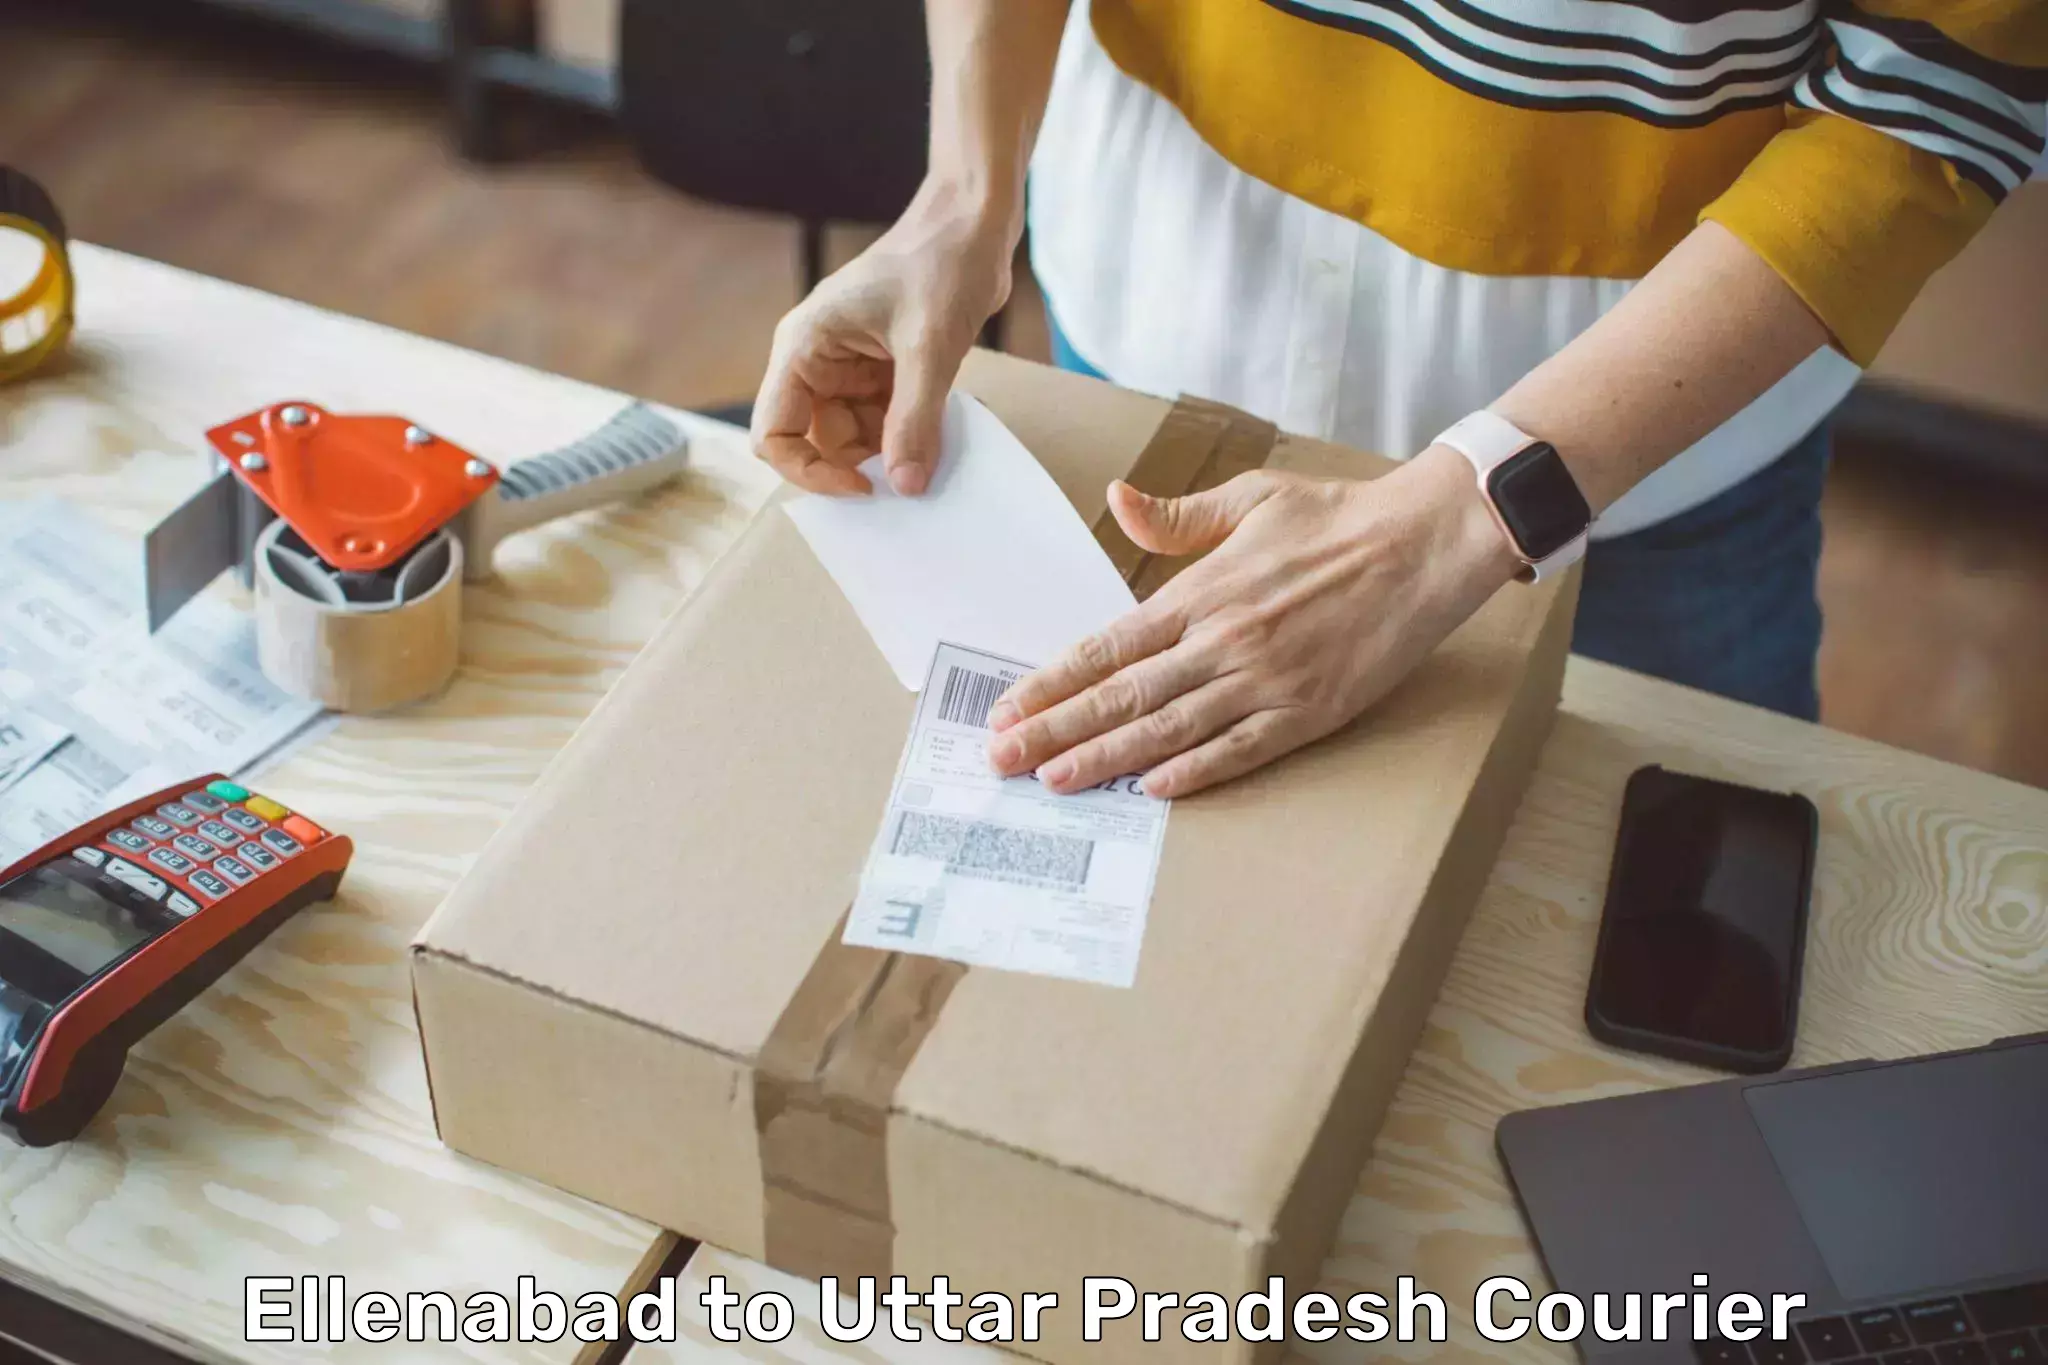 Modern parcel services Ellenabad to Hamirpur Uttar Pradesh